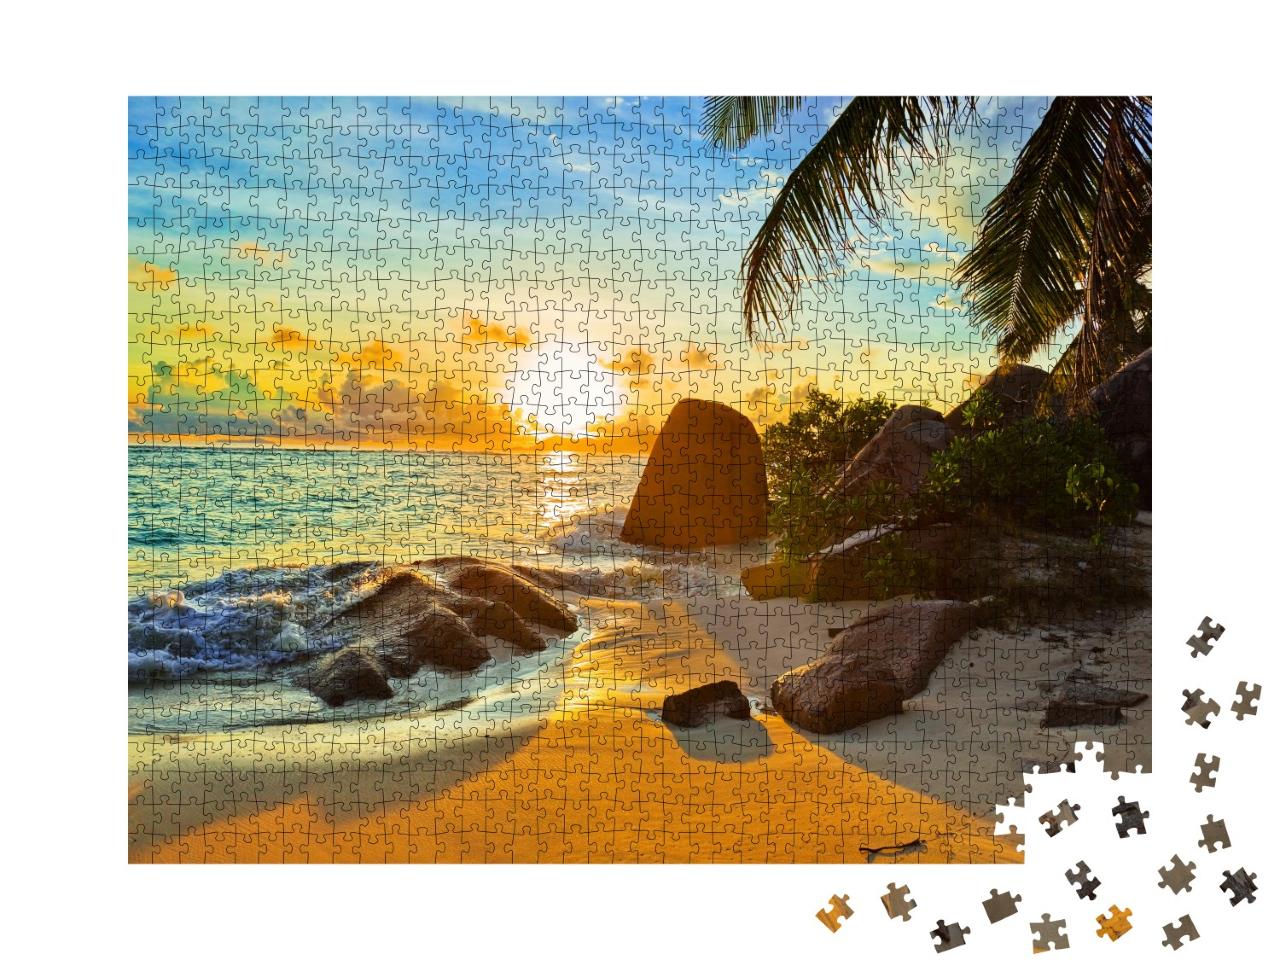 Puzzle 1000 Teile „Tropischer Strand im Sonnenuntergang“